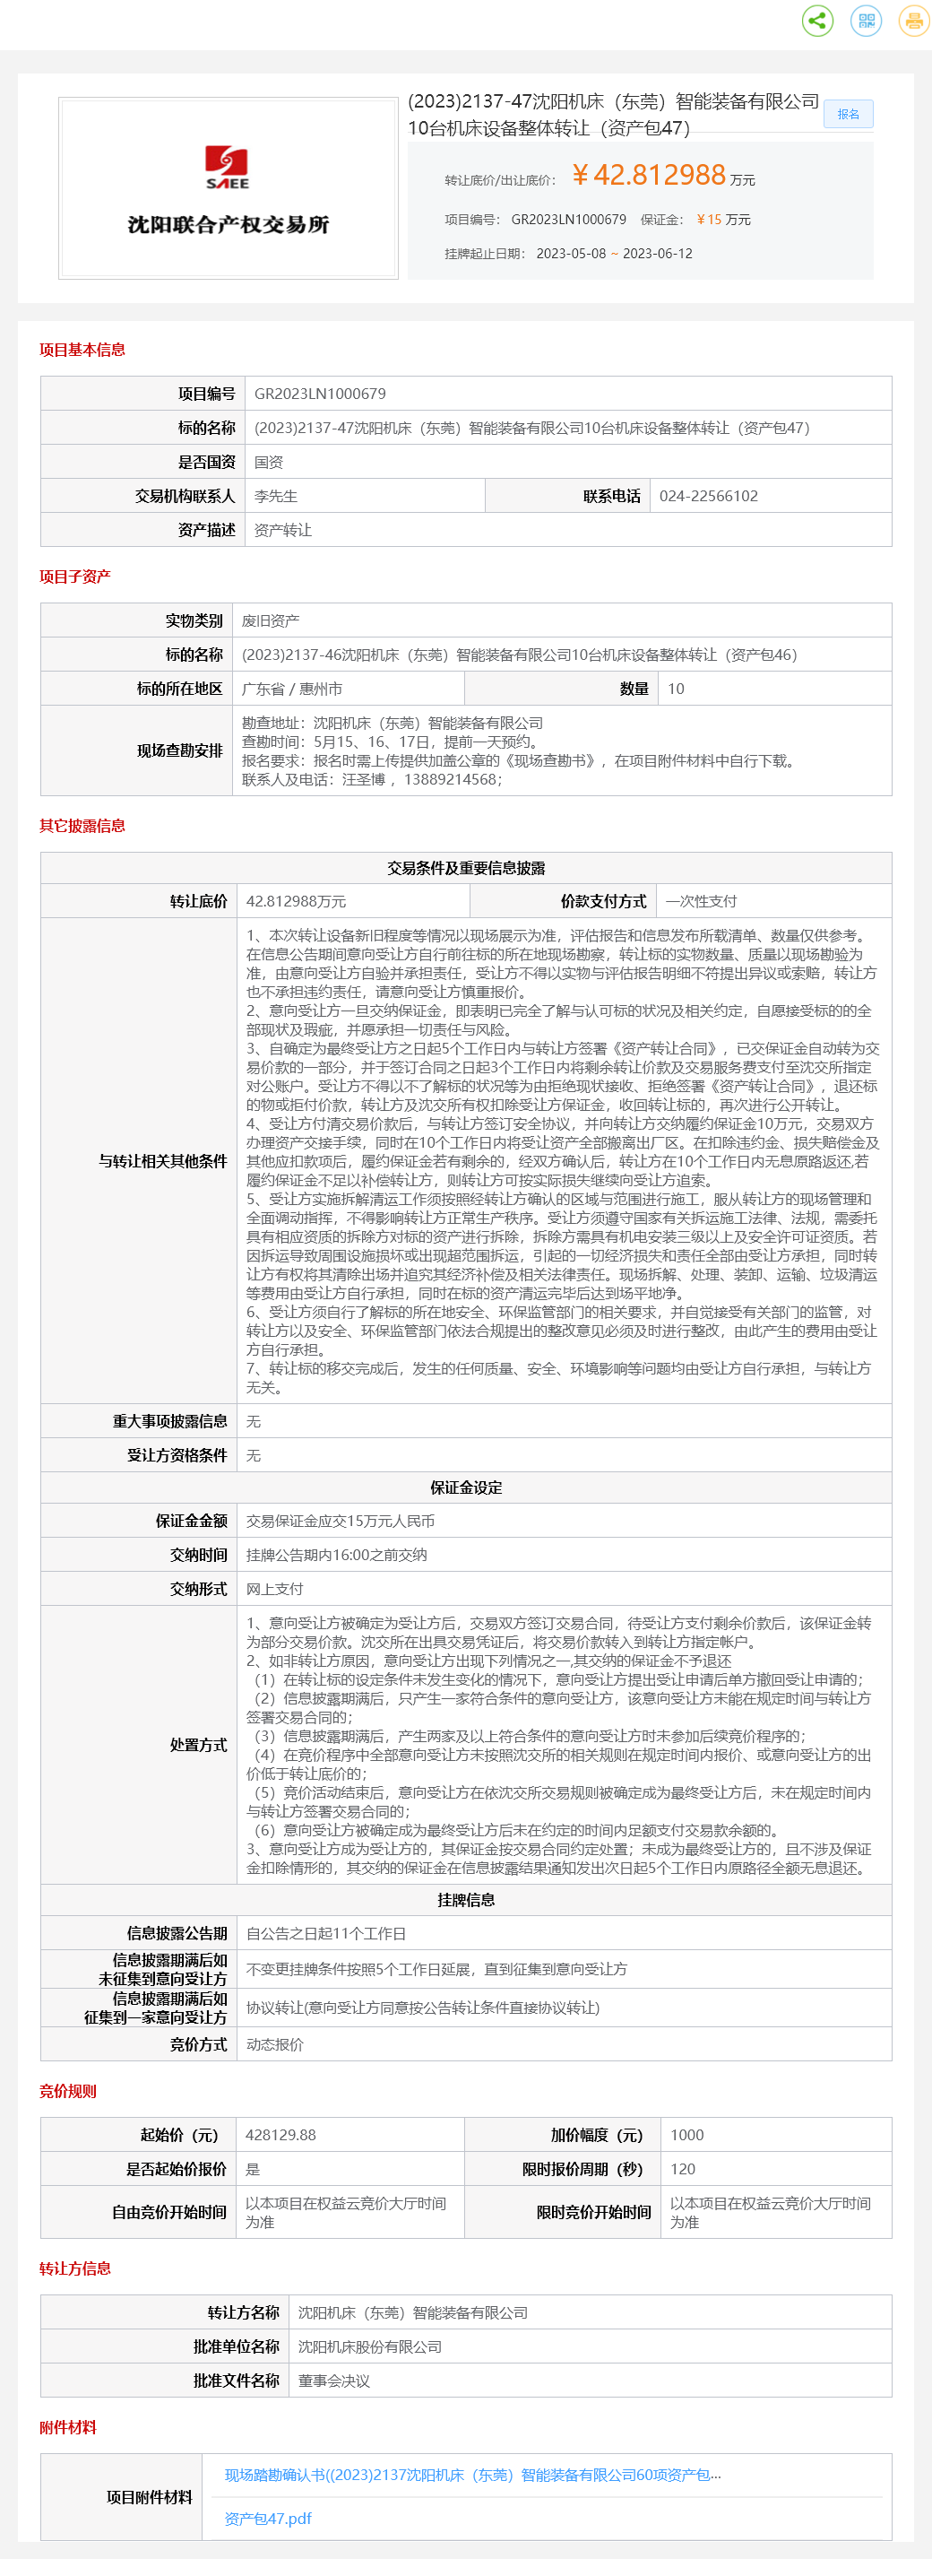 6月12日惠州机床公司10台机床设备整体（资产包47）转让公告